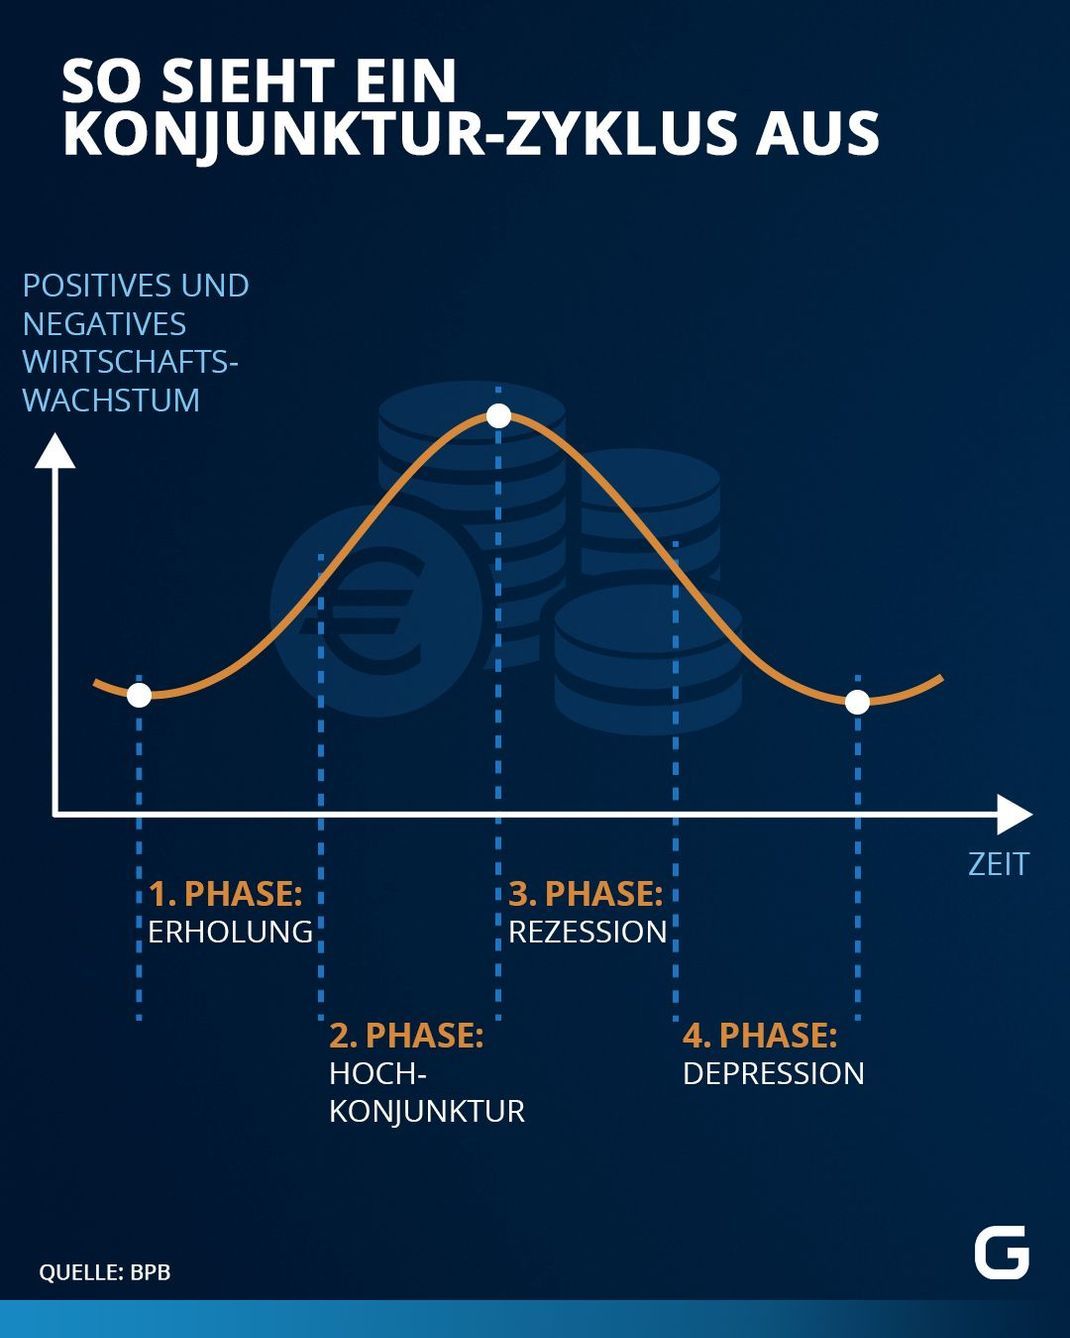 In der Grafik werden die vier Phasen eines Konjunktur-Zyklus dargestellt : Erholung, Hochkonjunktur, Rezession und Depression.